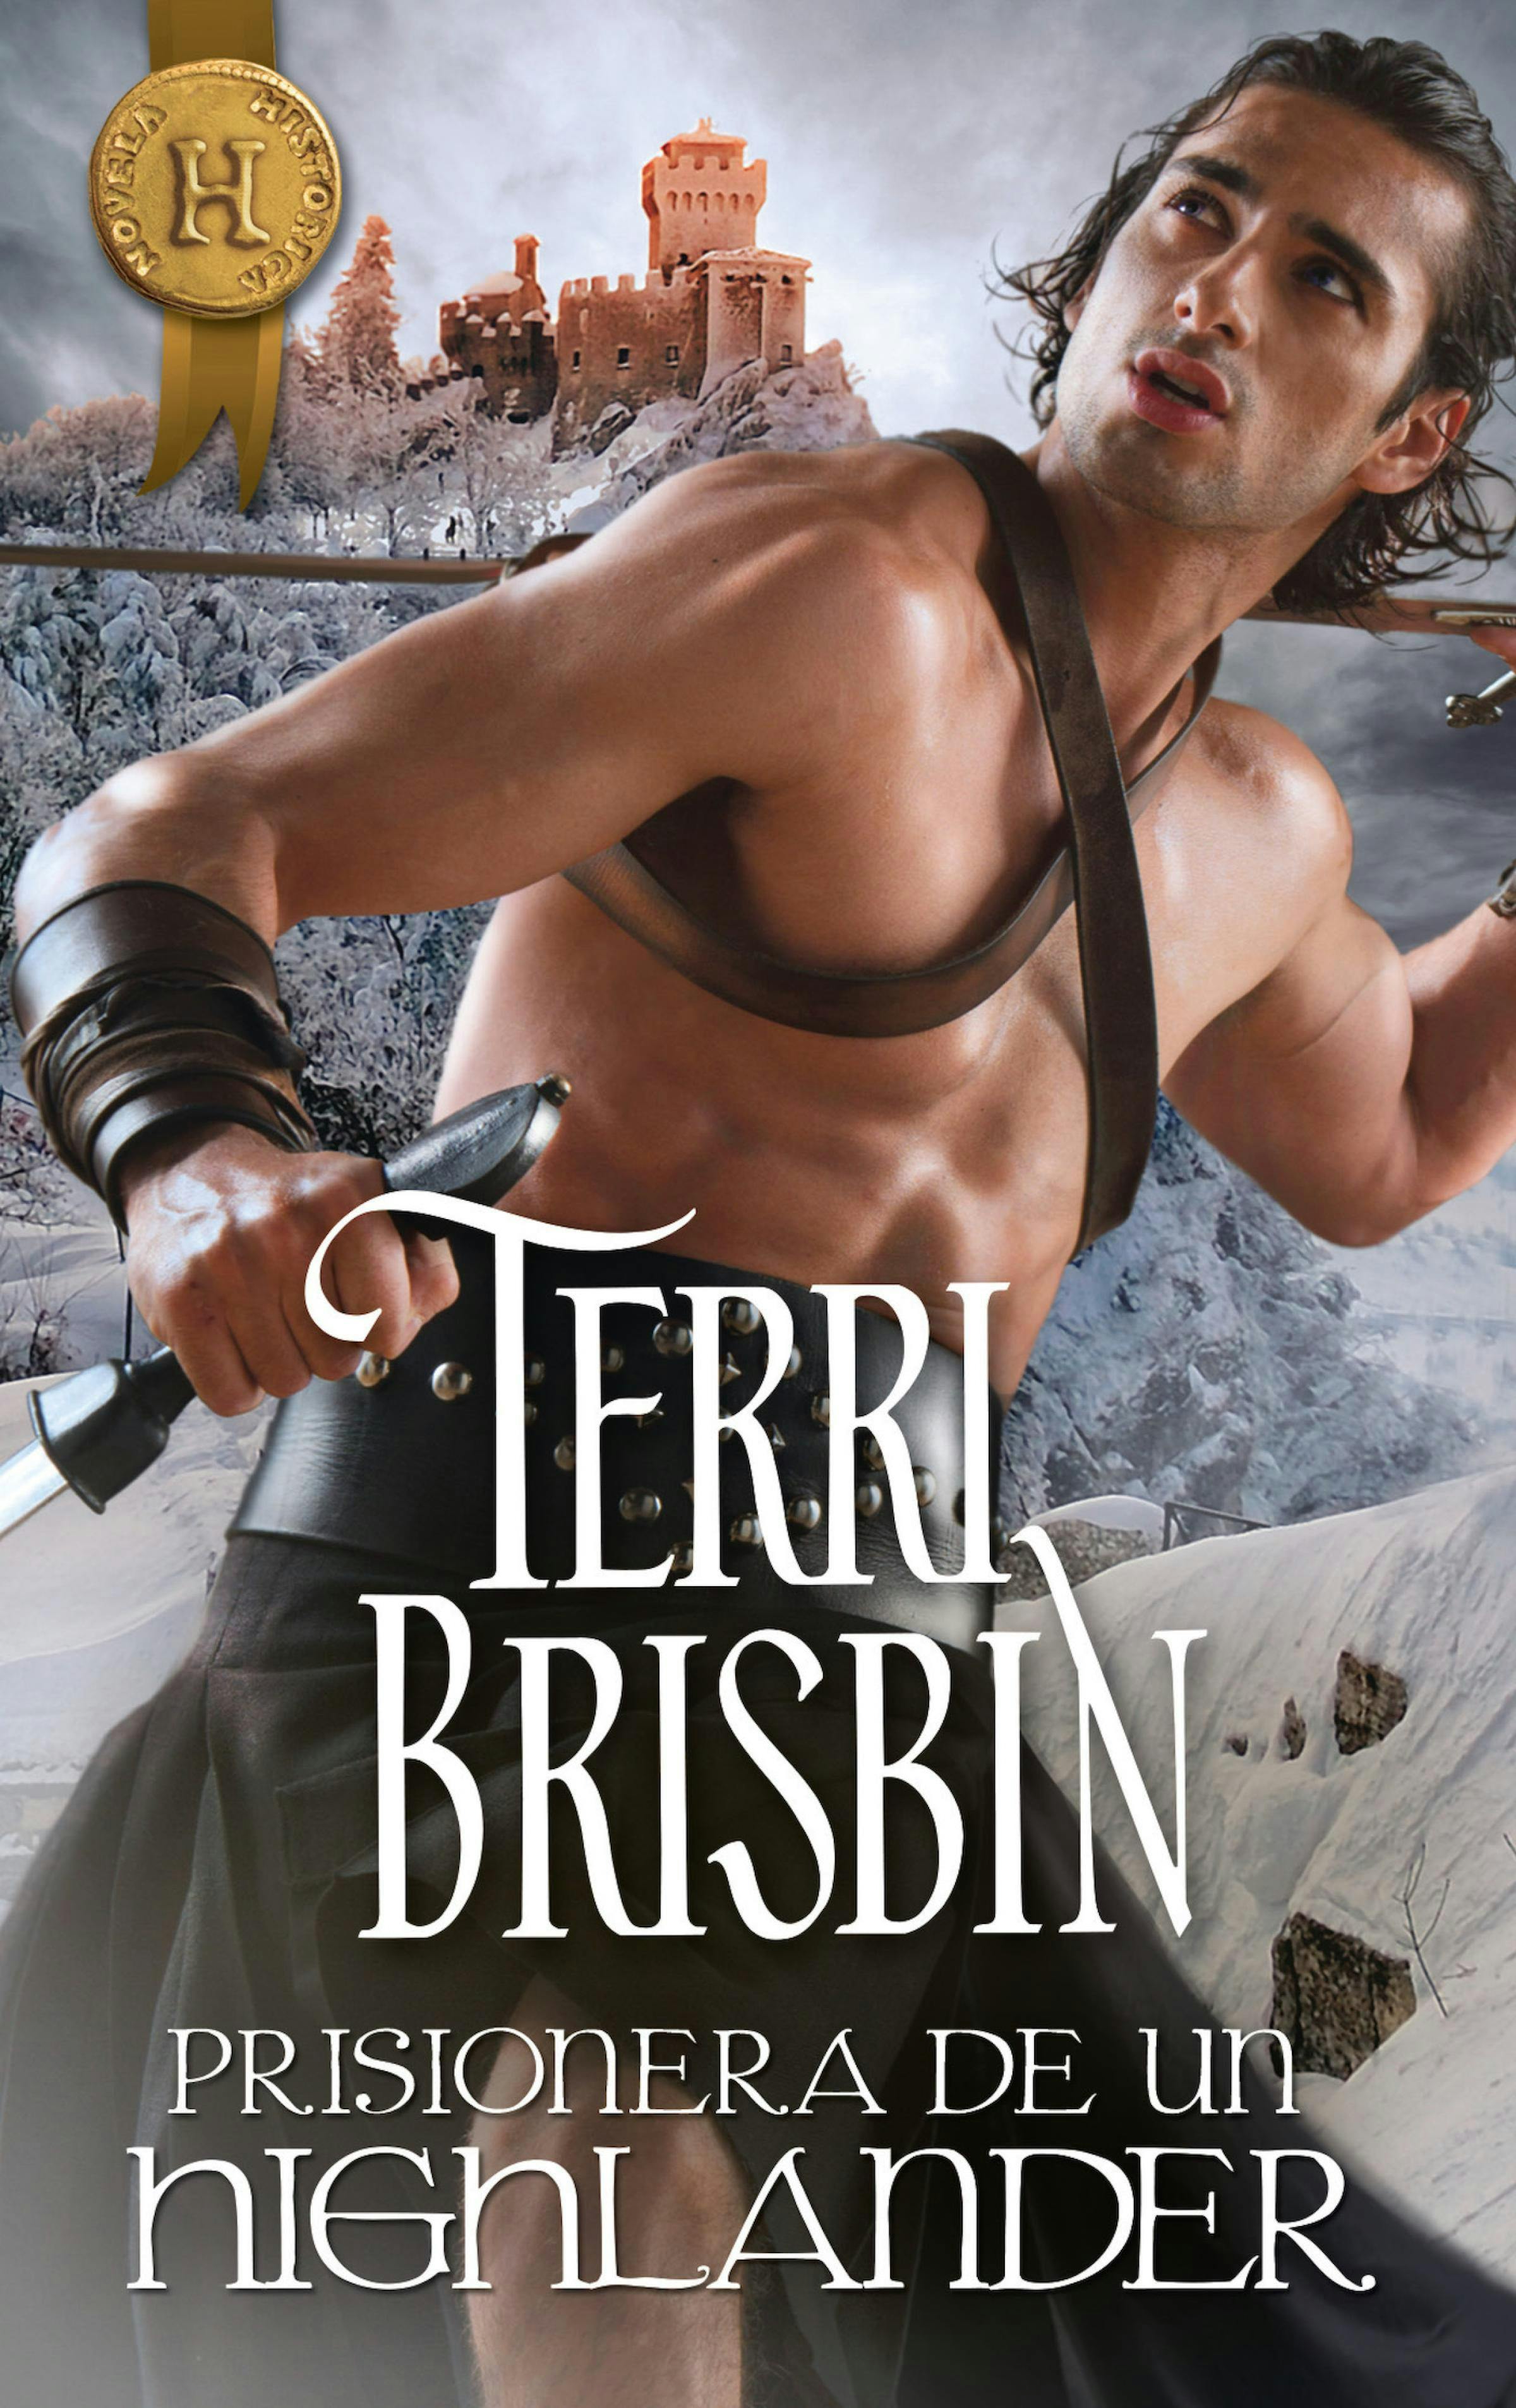 Prisionera de un highlander - Terri Brisbin